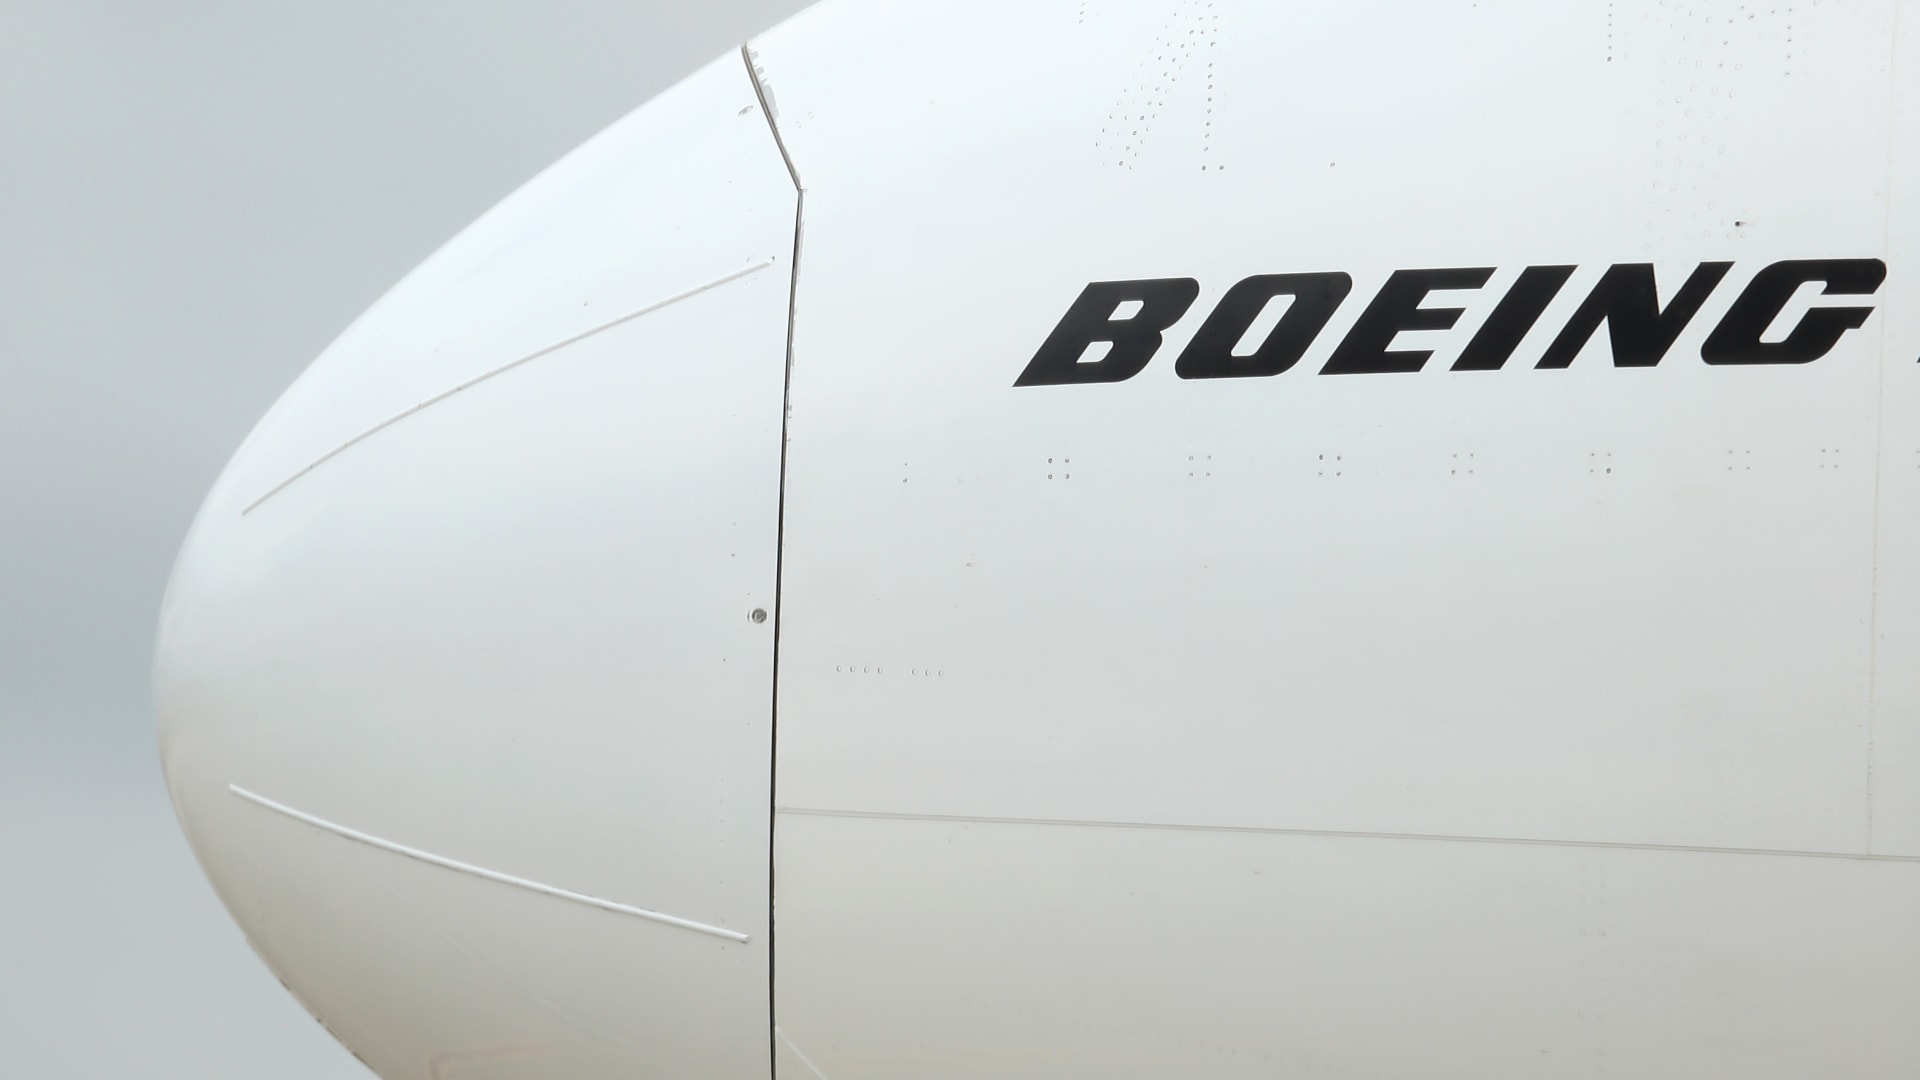 كيف ستؤثر حوادث 737 ماكس على مستقبل بوينغ في صناعة الطائرات؟